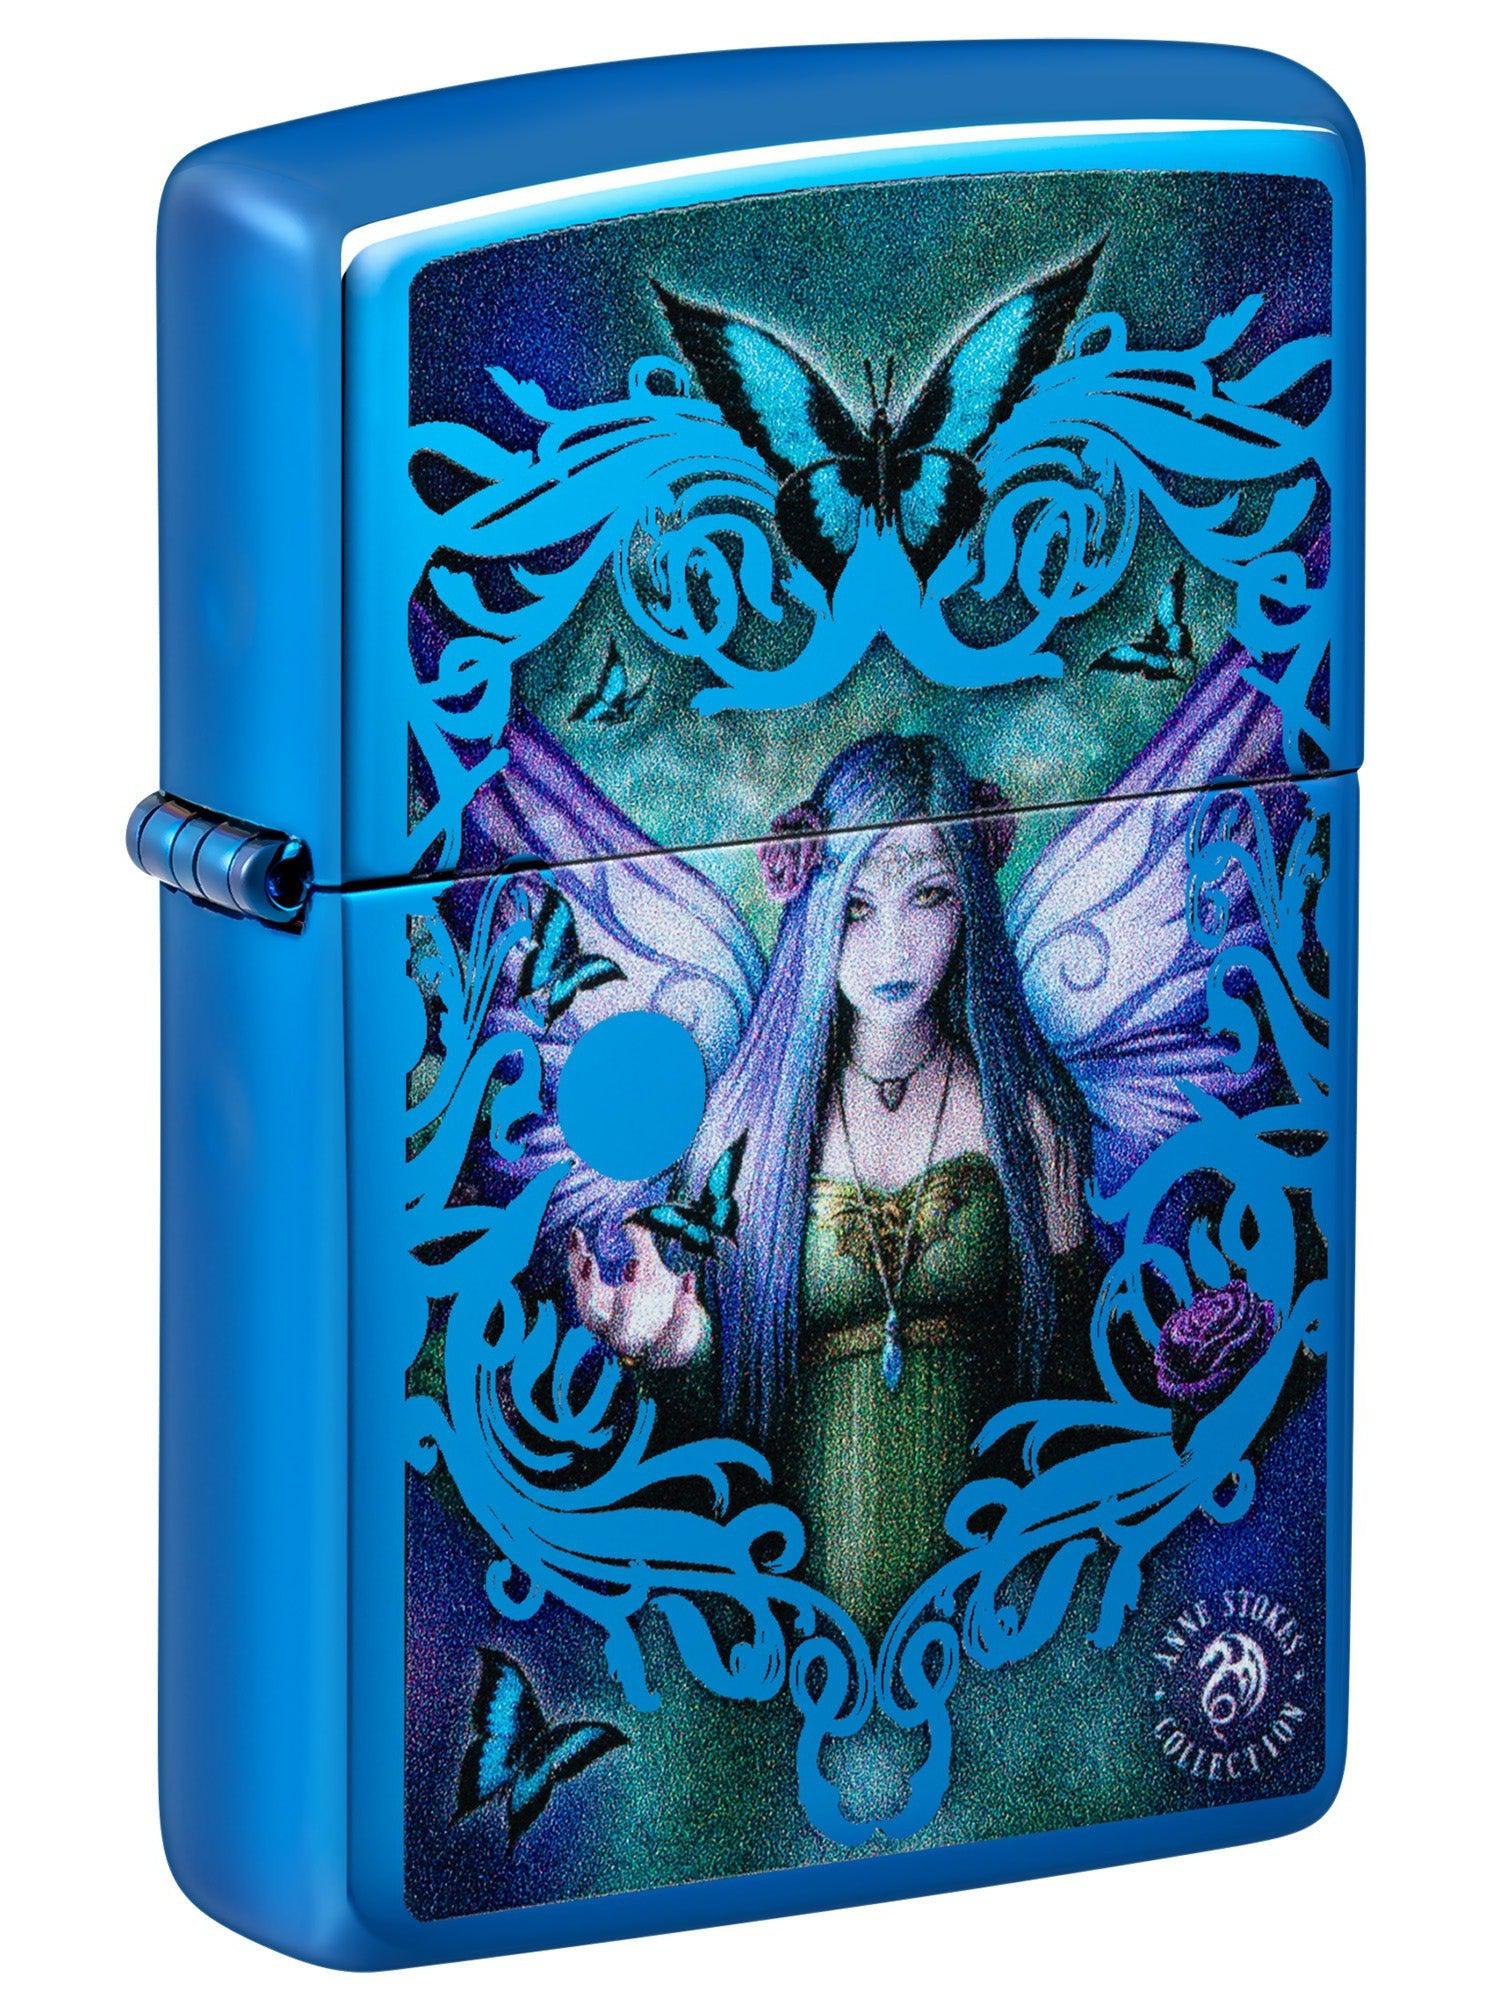 Zippo Lighter: Mystic Aura Fairy by Anne Stokes - High Polish Blue 48985